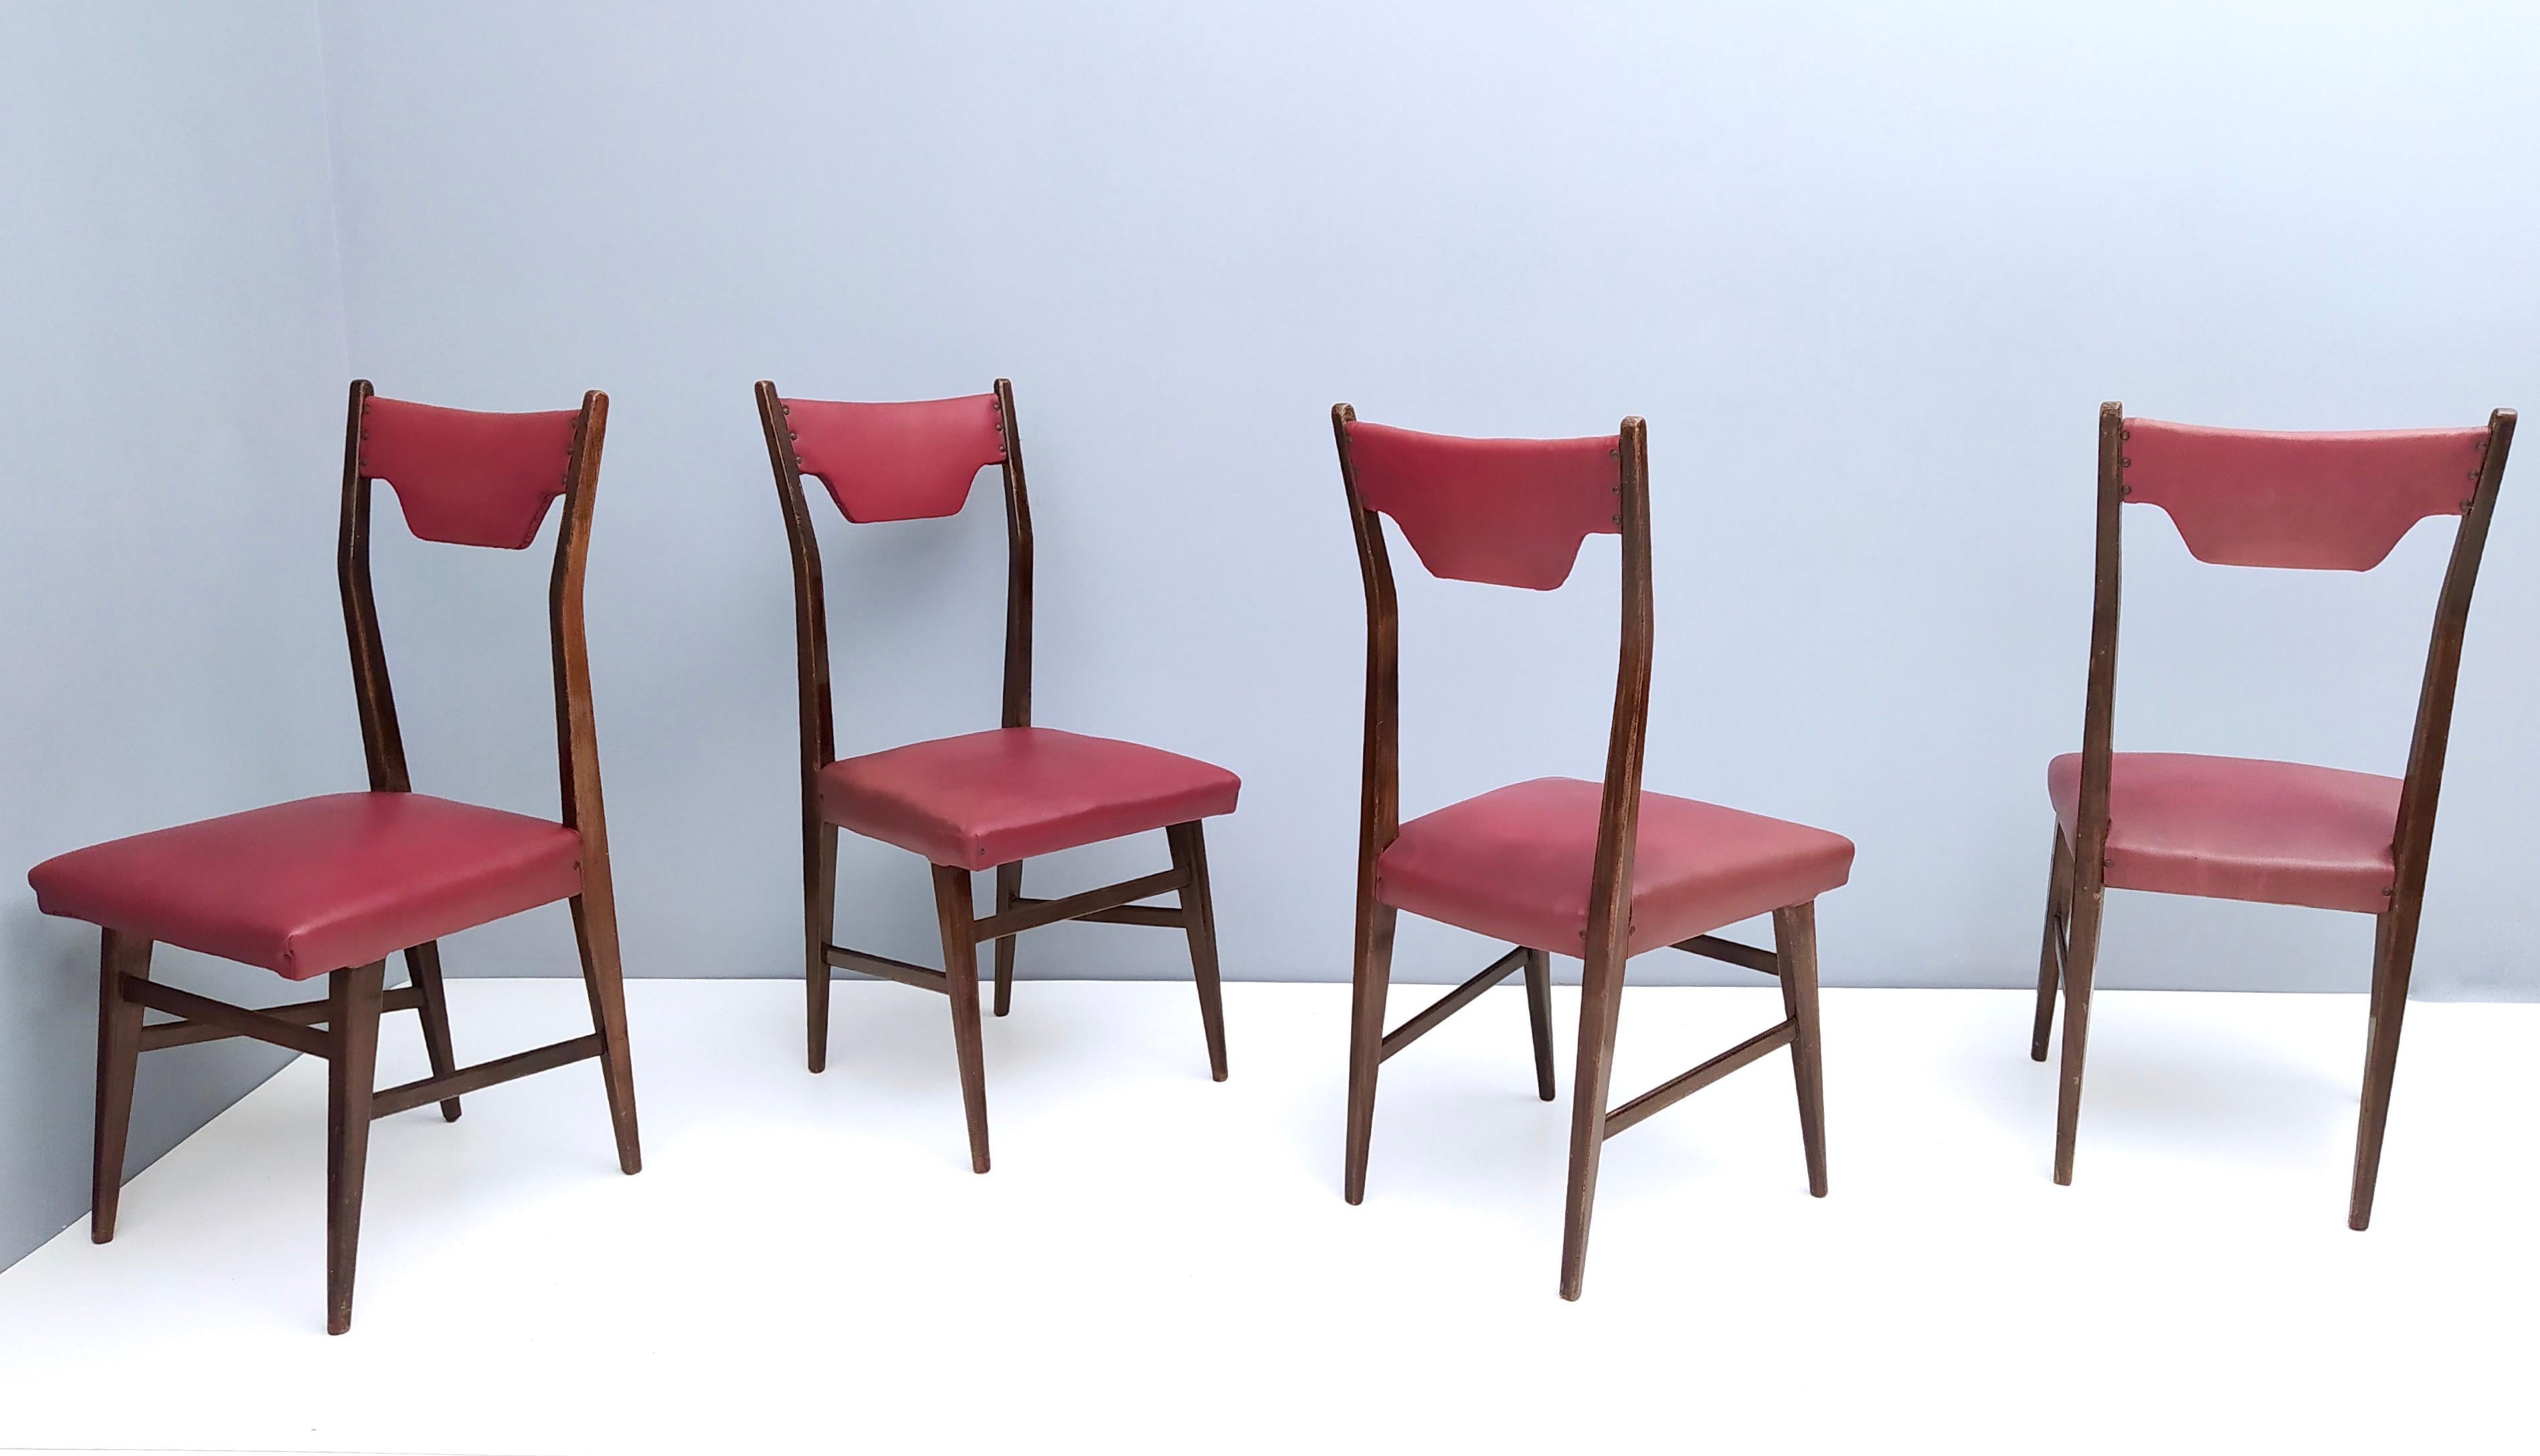 Hergestellt in Italien, 1950er Jahre.
Die Stühle sind mit einem Gestell aus ebonisierter Buche, Messingnägeln und der originalen karminroten Skaipolsterung ausgestattet. 
Es handelt sich um Vintage-Artikel, daher können sie leichte Gebrauchsspuren